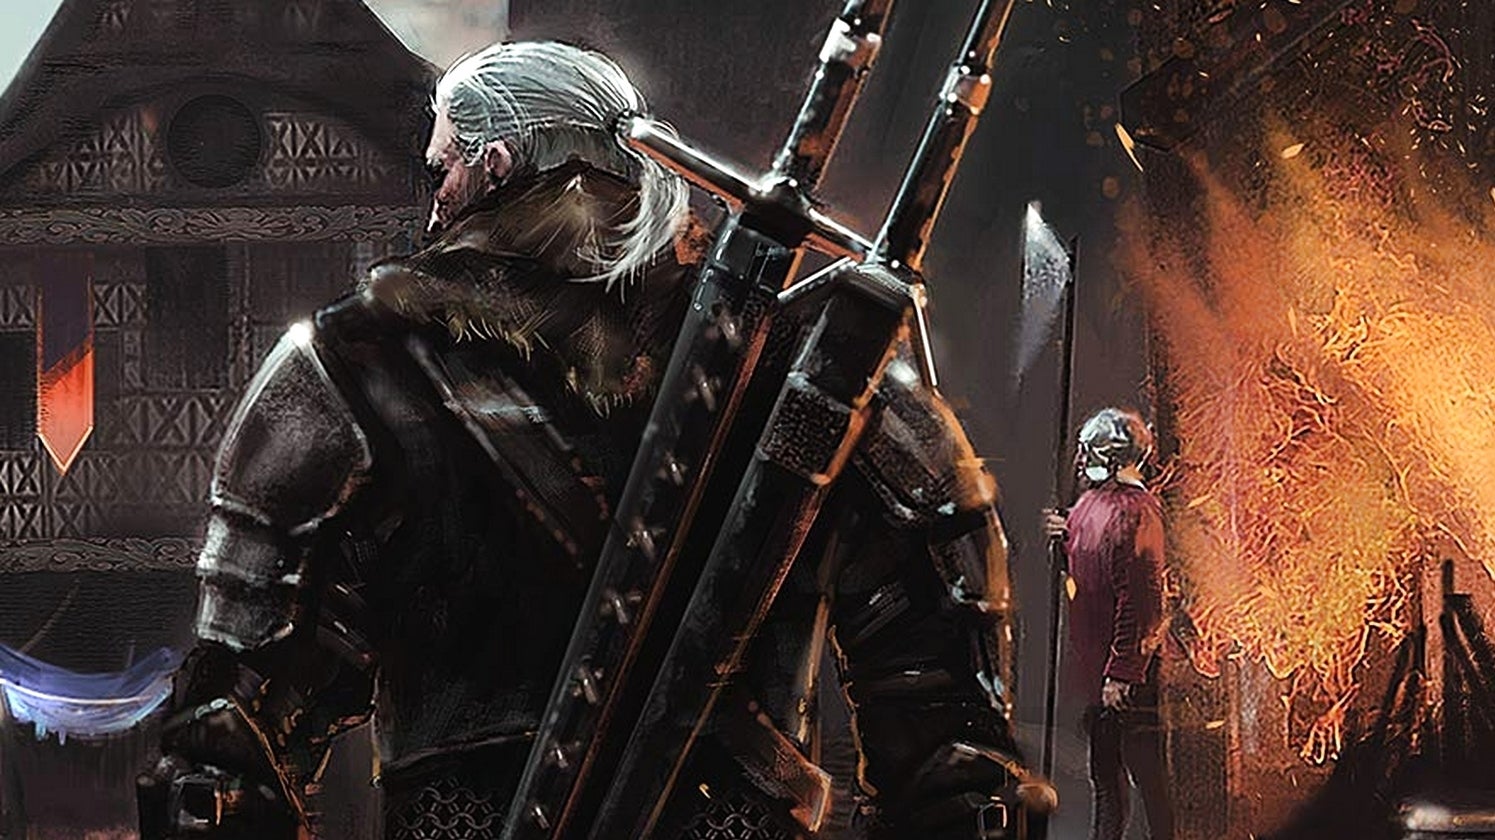 Bilder zu The Rise of the Witcher: A New RPG King ist nicht so gut wie die Spiele